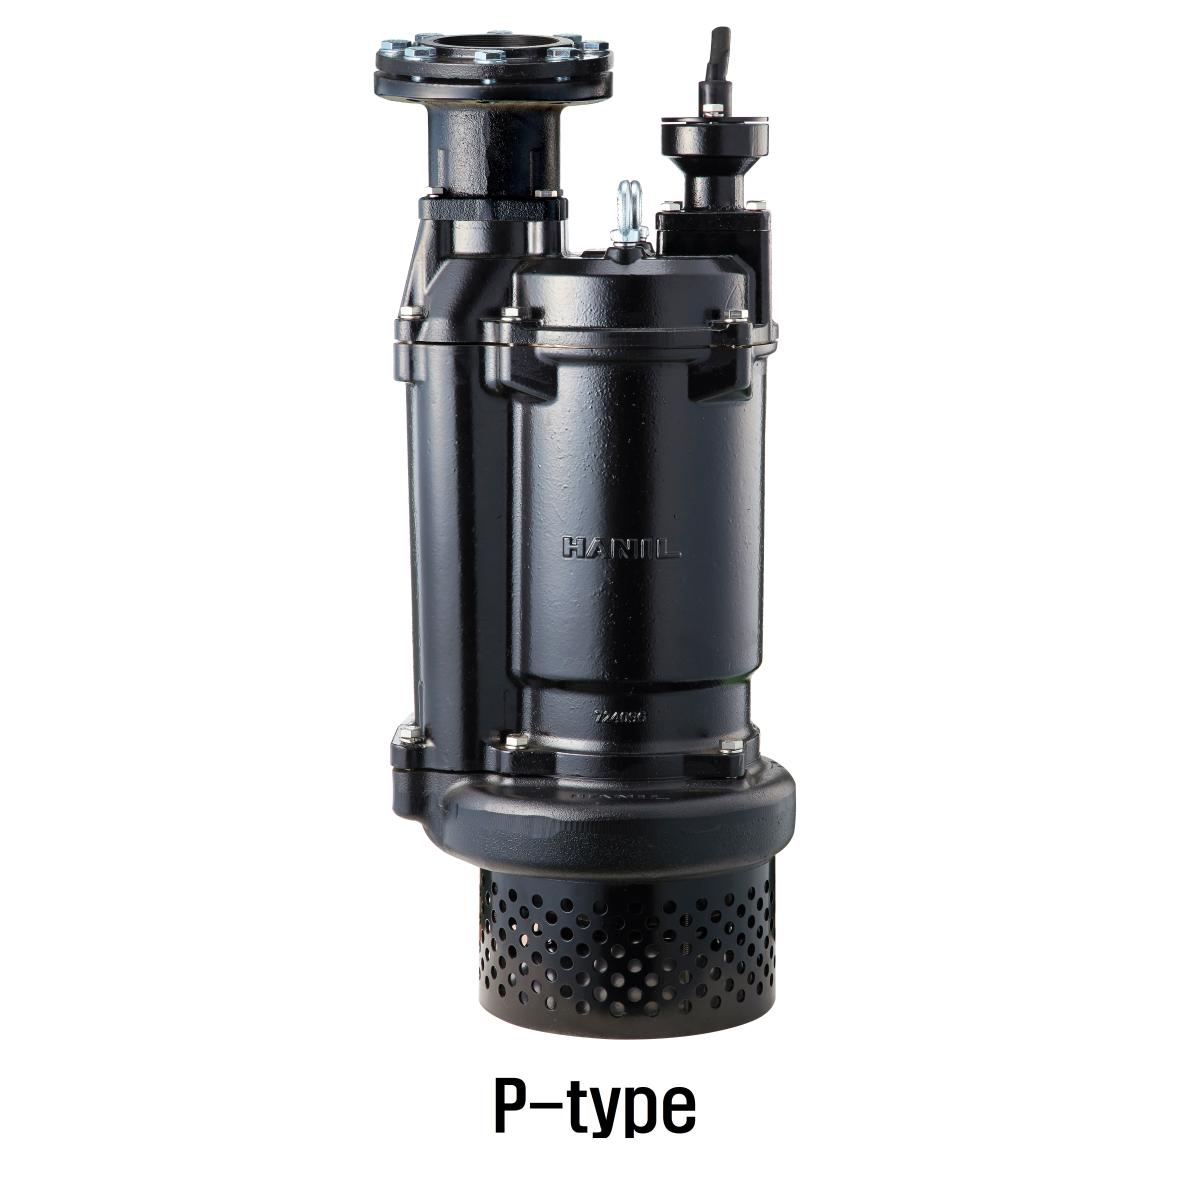 공사용 수중펌프 IPCH-0532(3)N80(P)_1